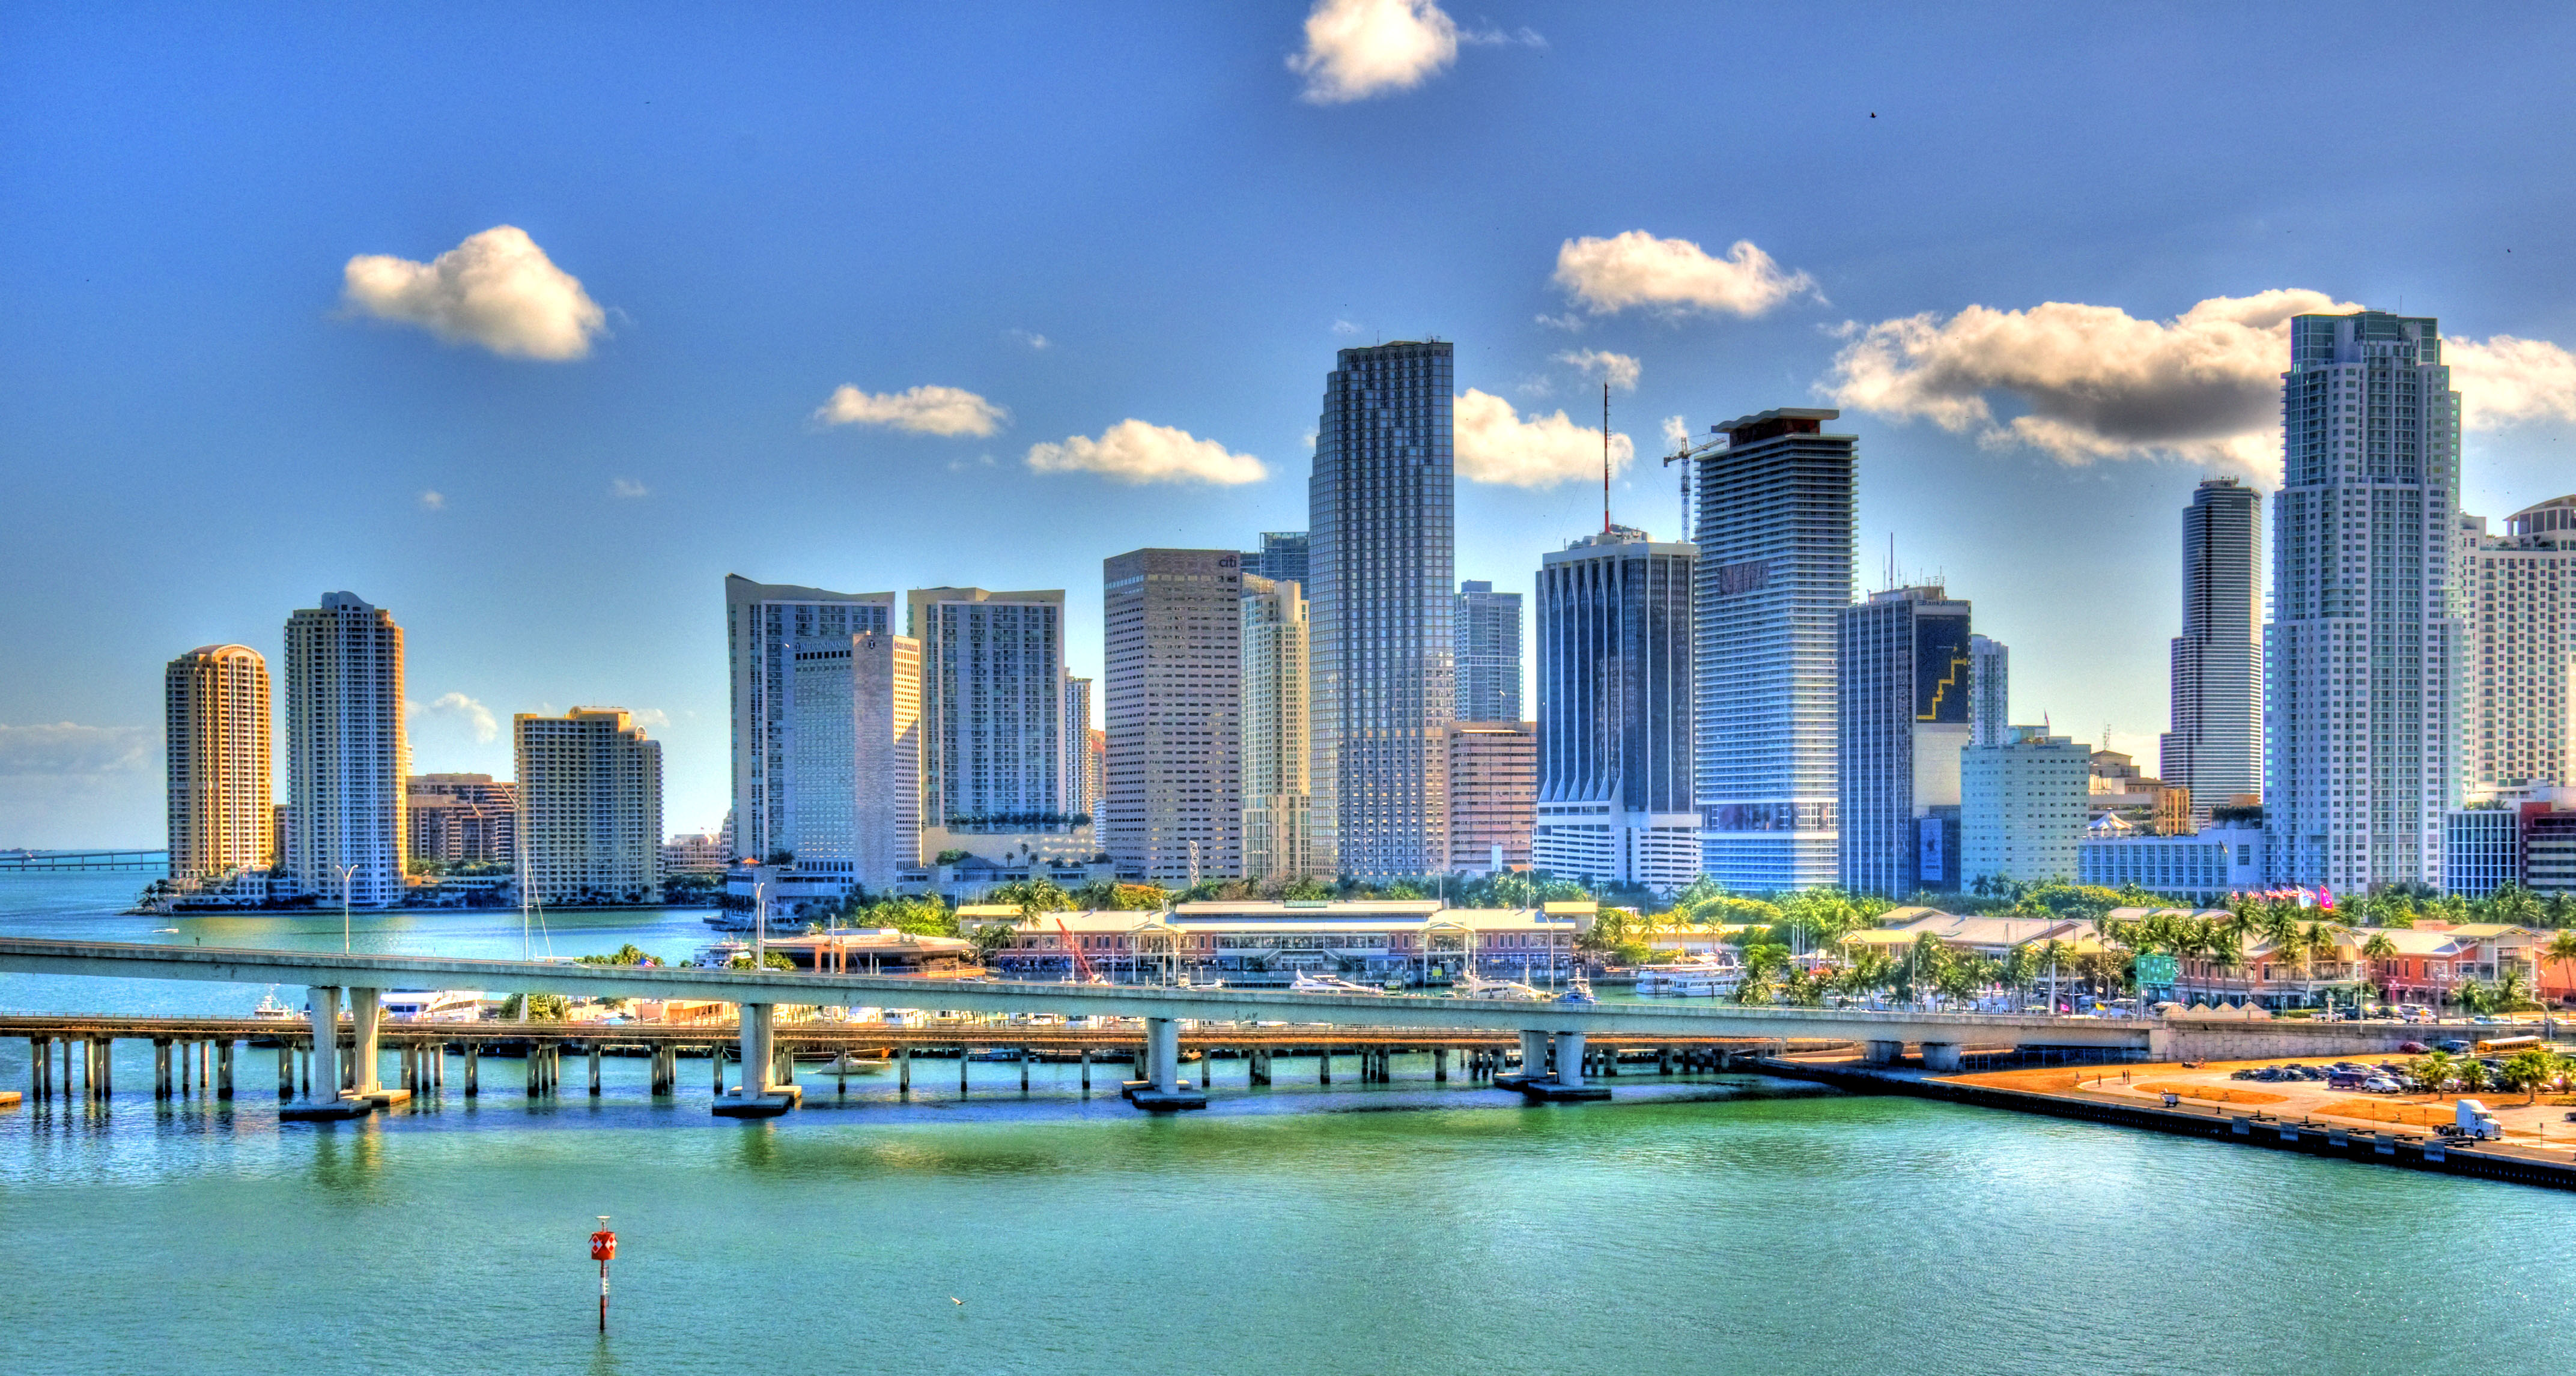 Vista de Miami, Flrida. (Foto: Imagina Digital)